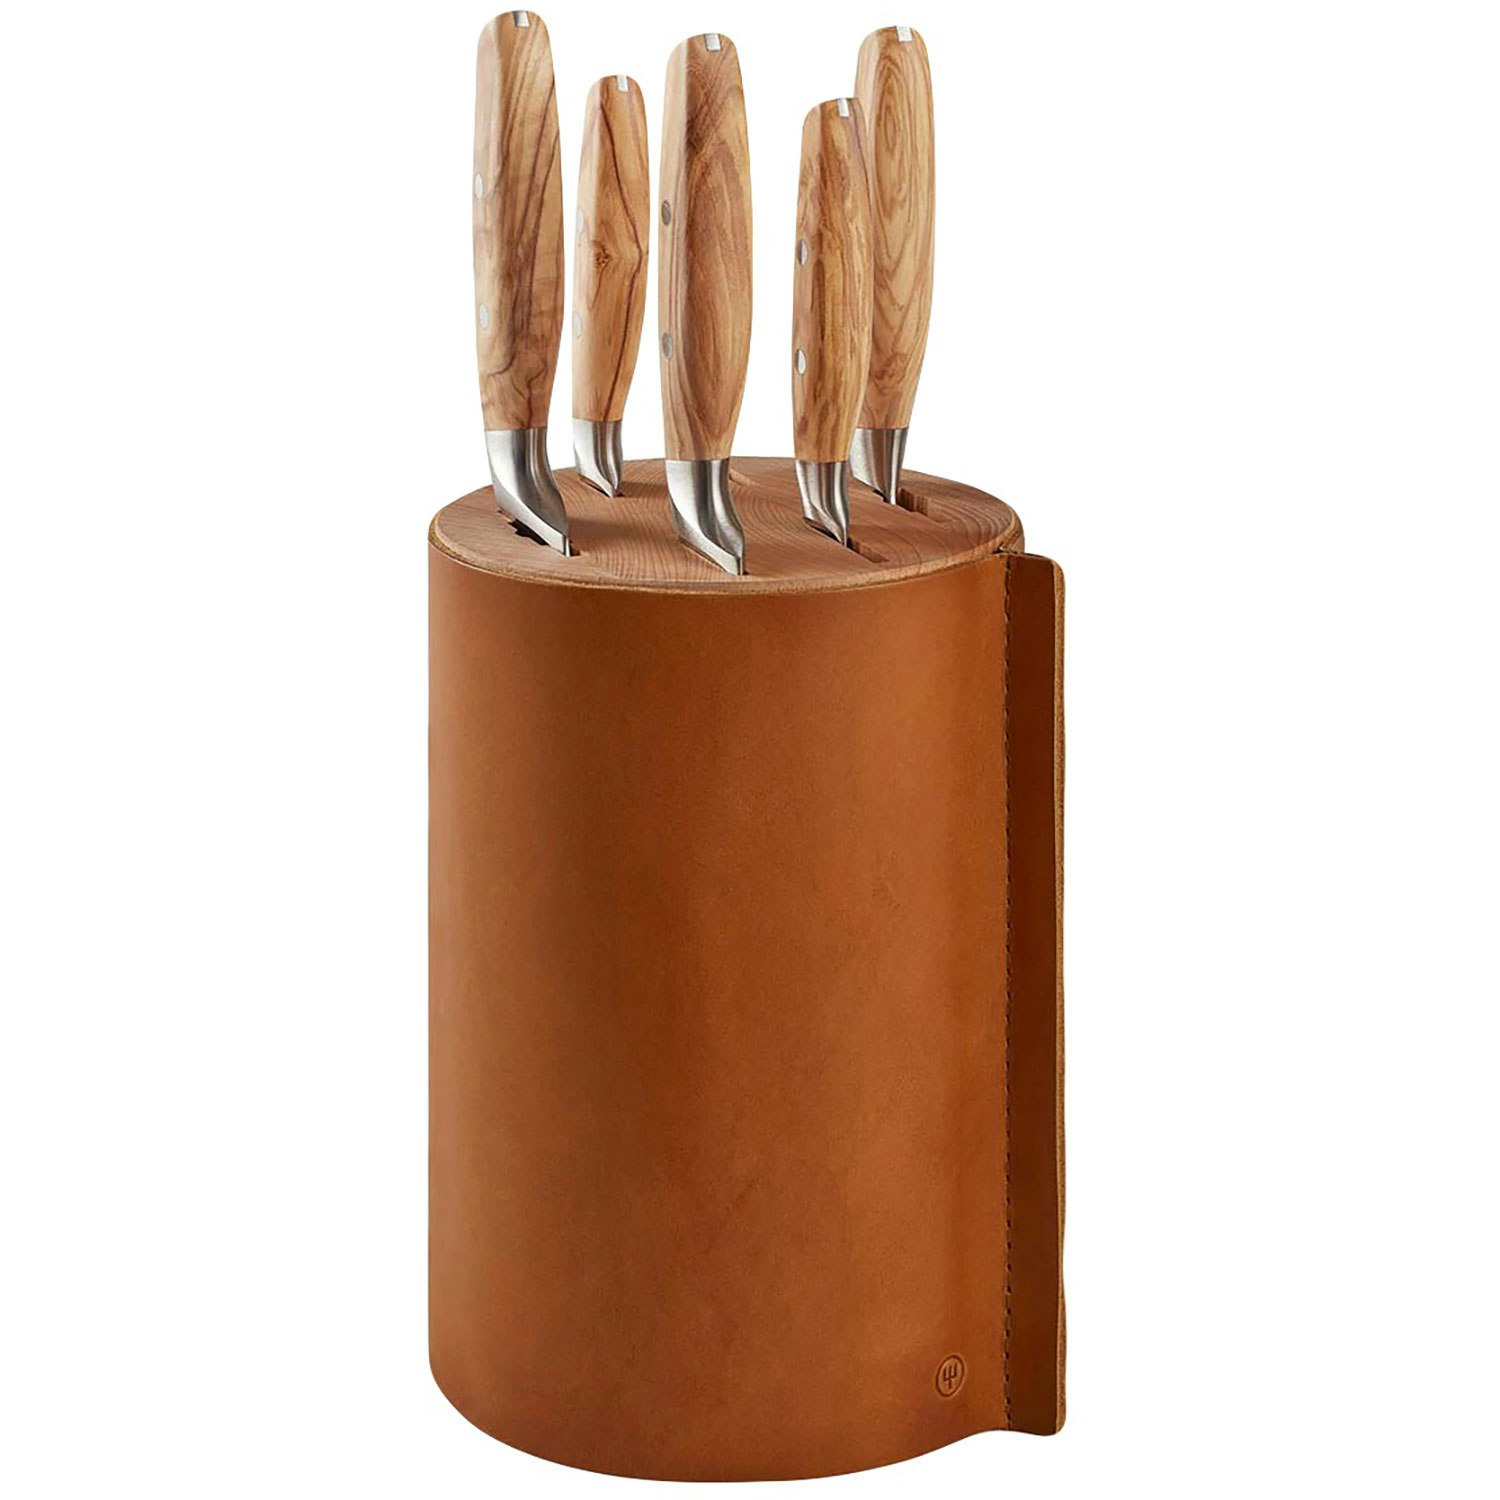 https://royaldesign.com/image/2/wusthof-amici-knife-block-with-5-knives-olive-wood-leather-0